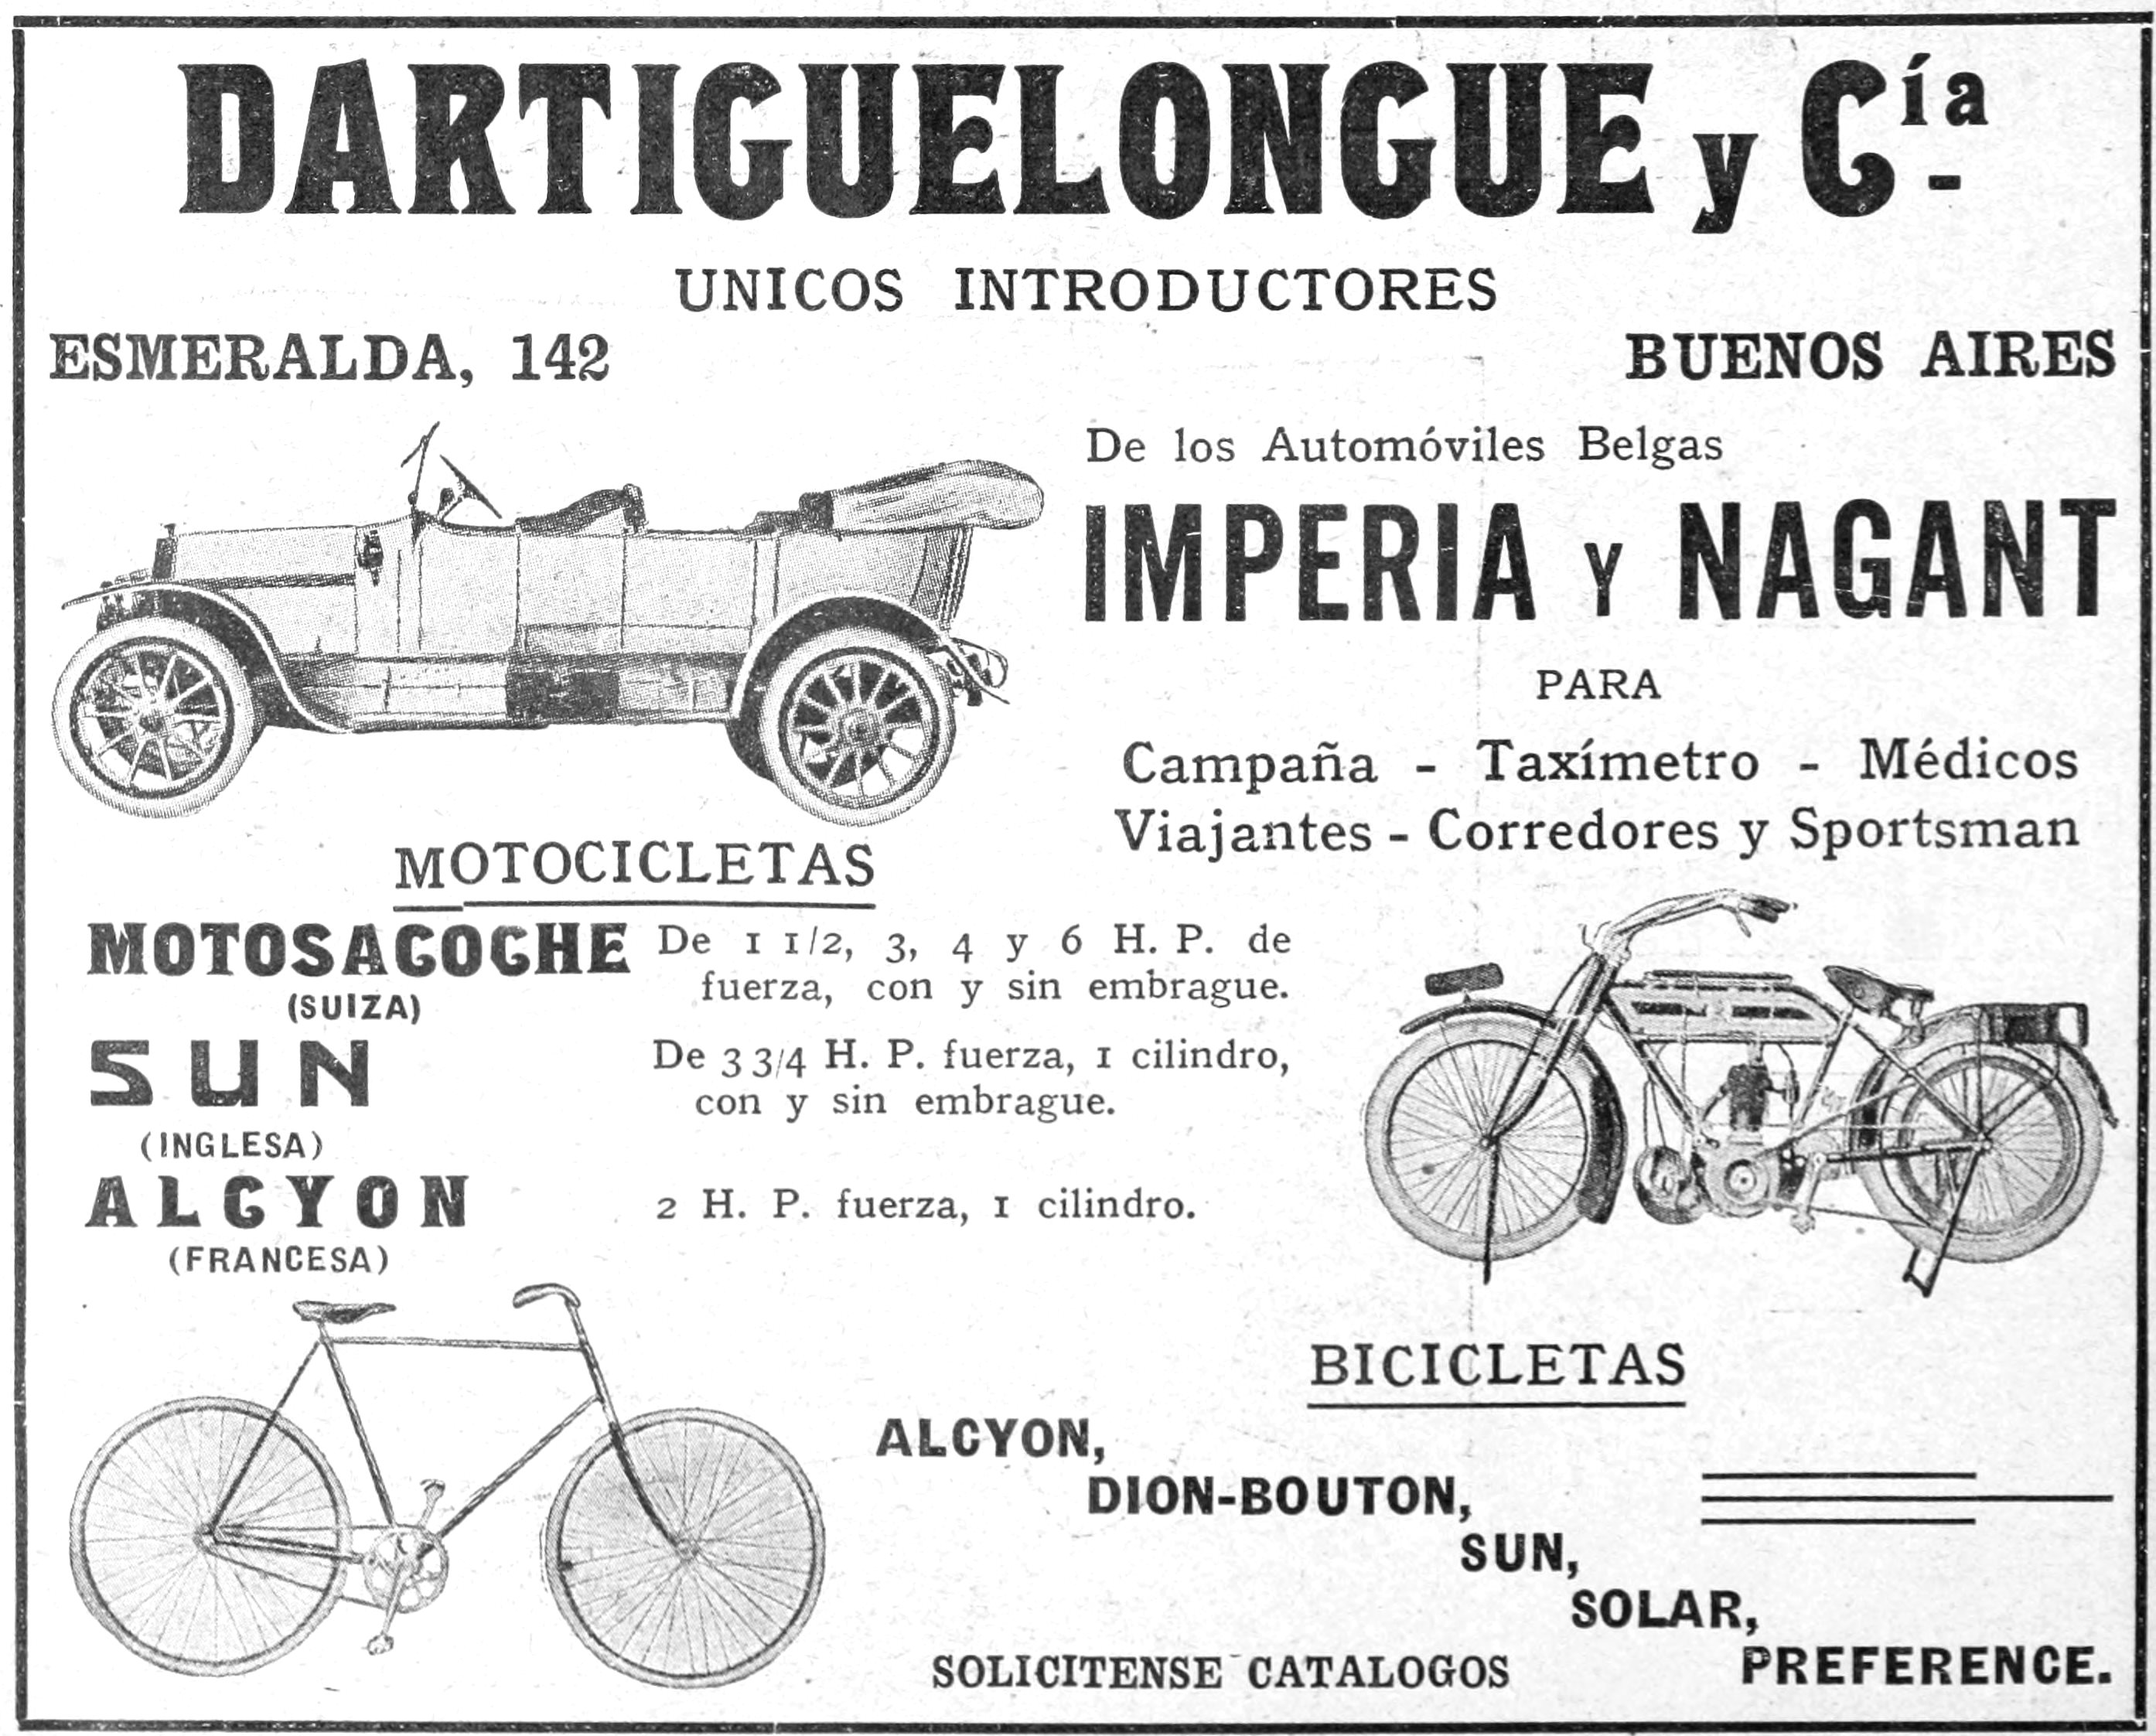 Dartiguelongue 1913 060.jpg